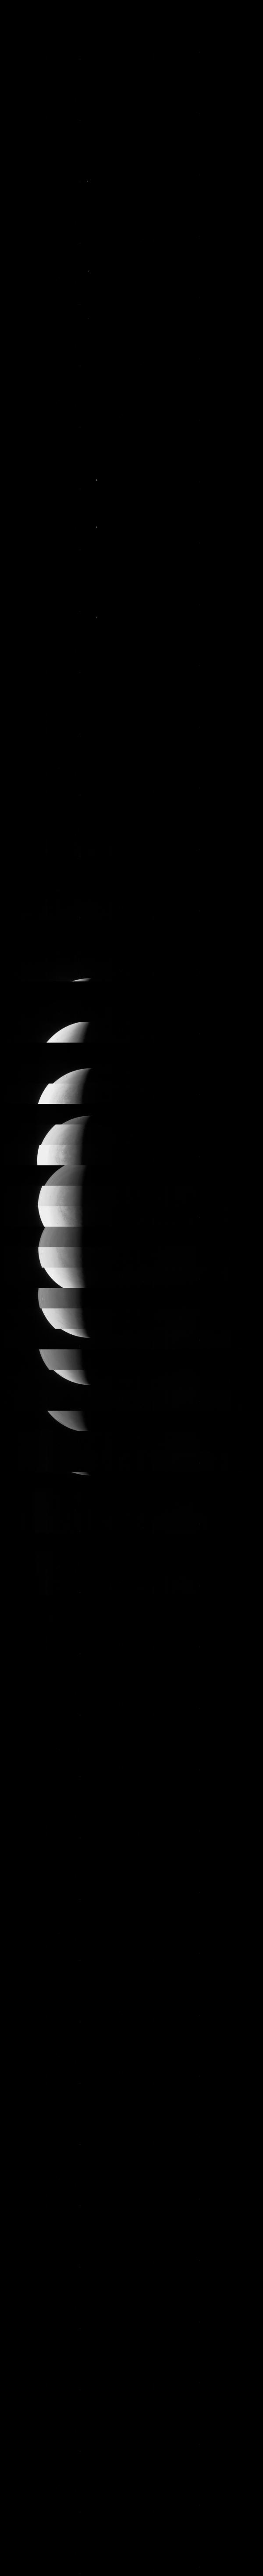 JunoCam là một thiết bị nghiên cứu không gian nổi tiếng, cho phép nghiên cứu và chụp ảnh của hành tinh Jupiter. Bạn sẽ có cơ hội khám phá thêm về JunoCam và thế giới đầy kì diệu của không gian bằng những hình ảnh độc đáo do JunoCam chụp được.